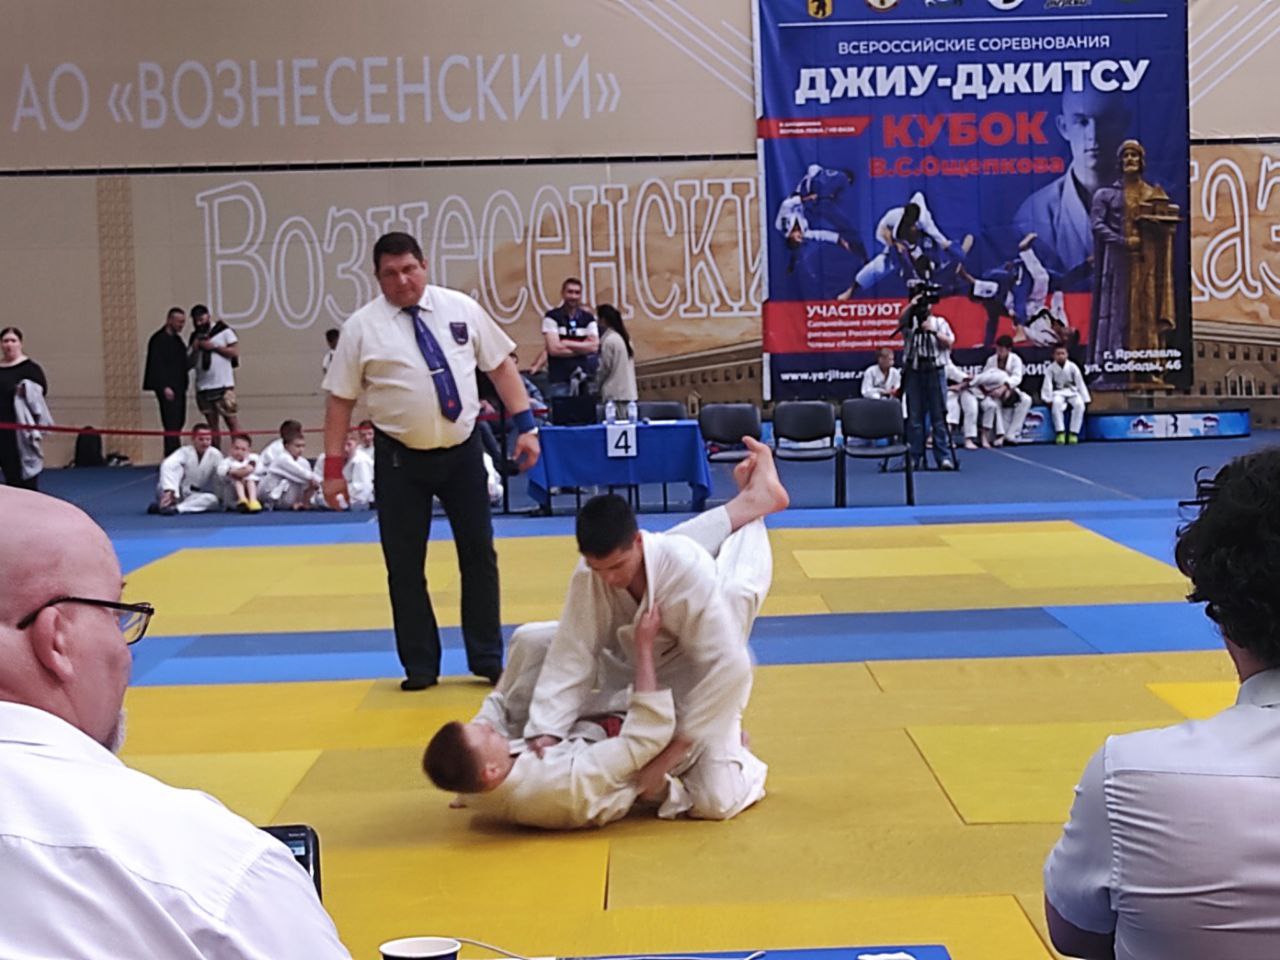 Сборная Ярославской области выиграла золото Всероссийского турнира по джиу-джитсу